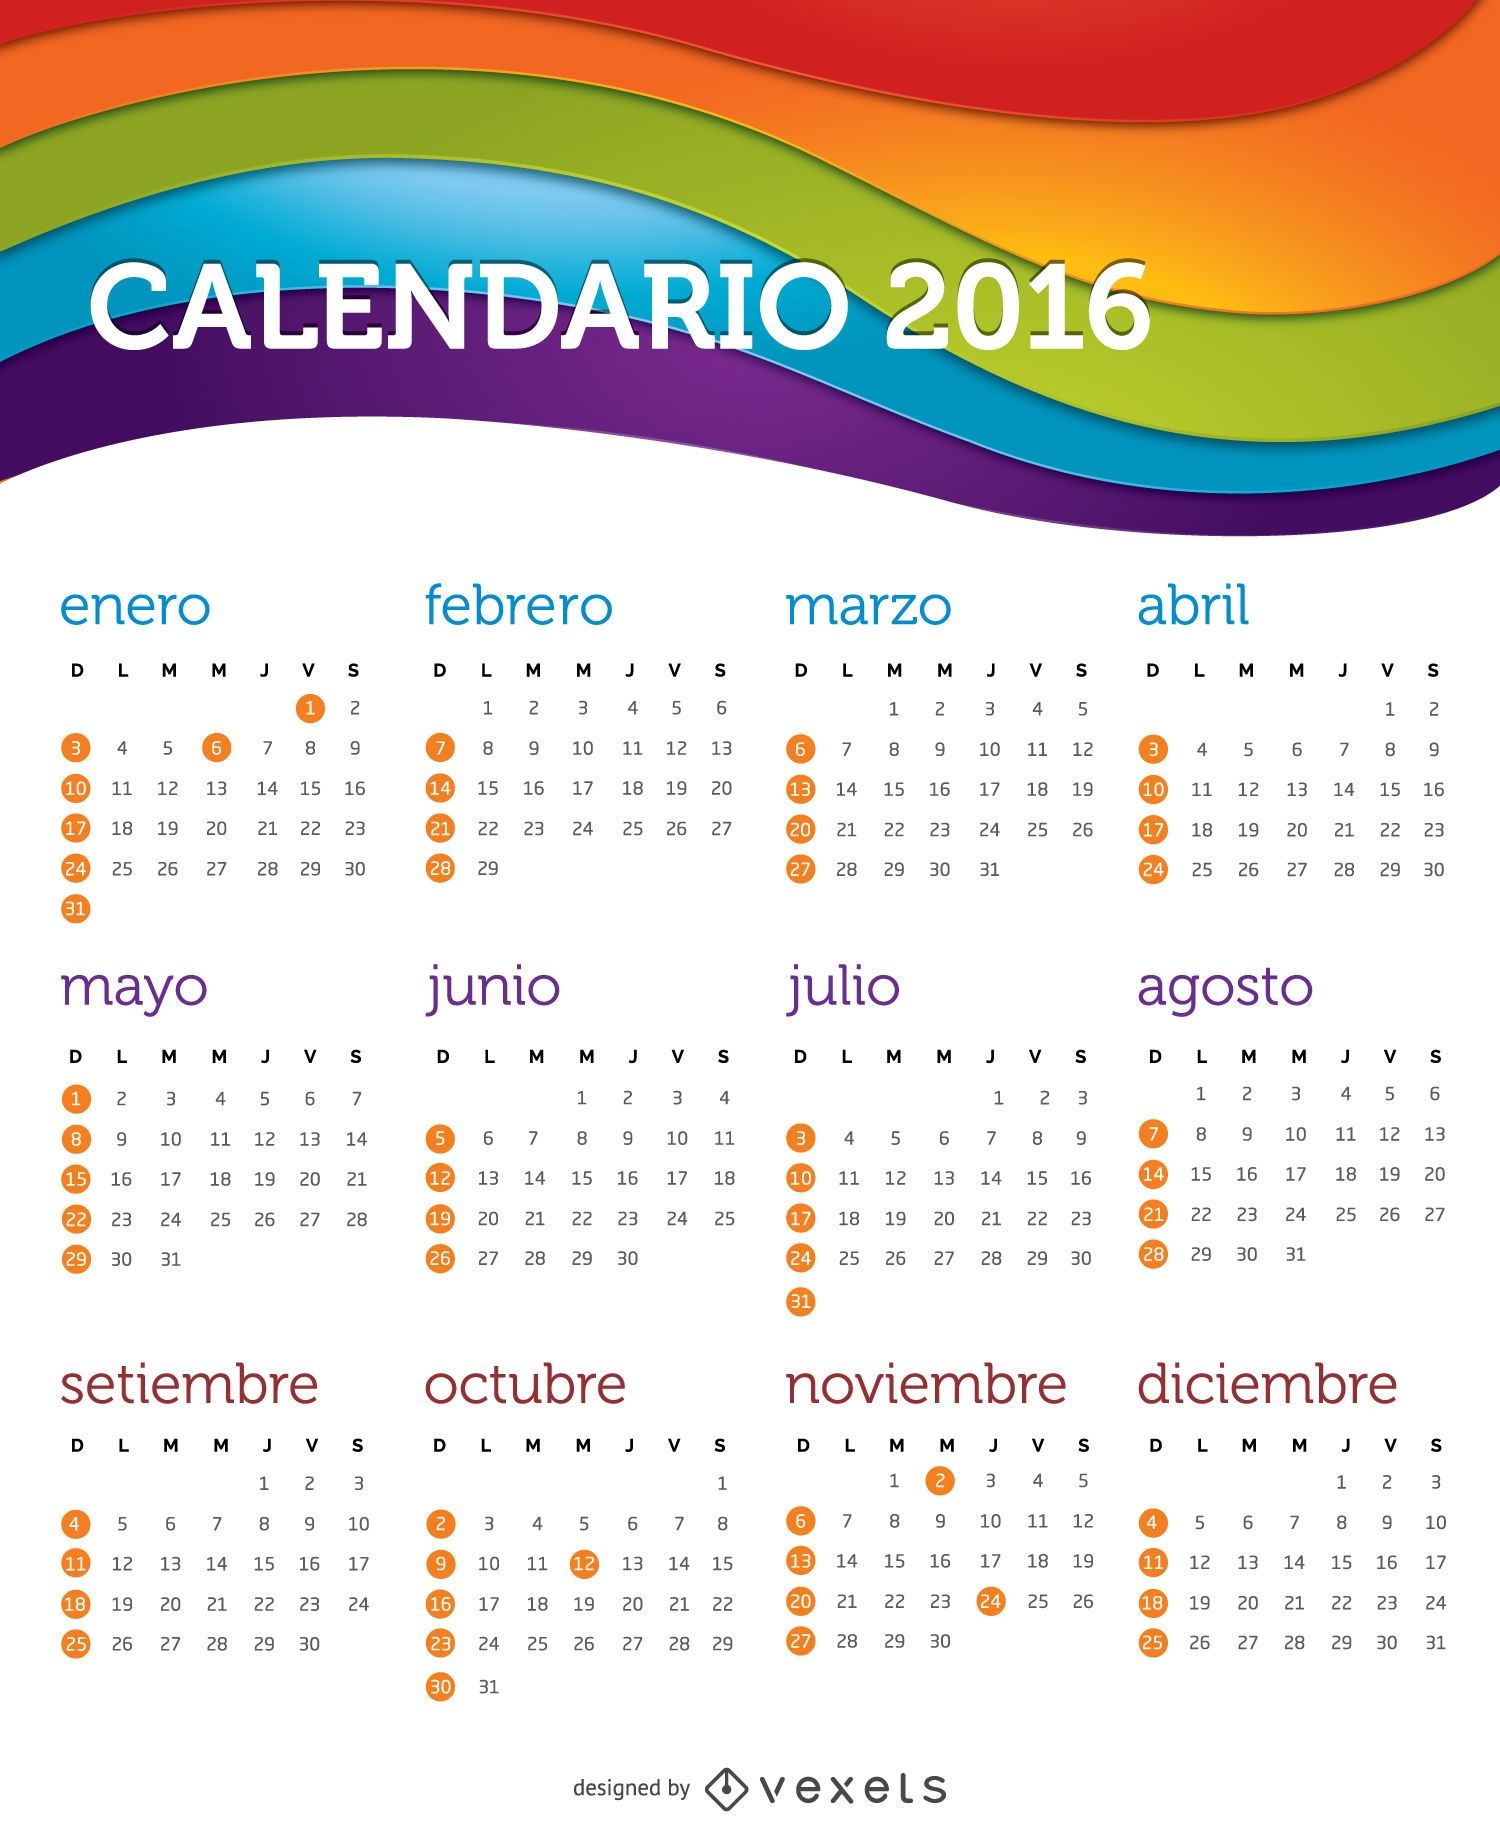 Calendario 2016 español